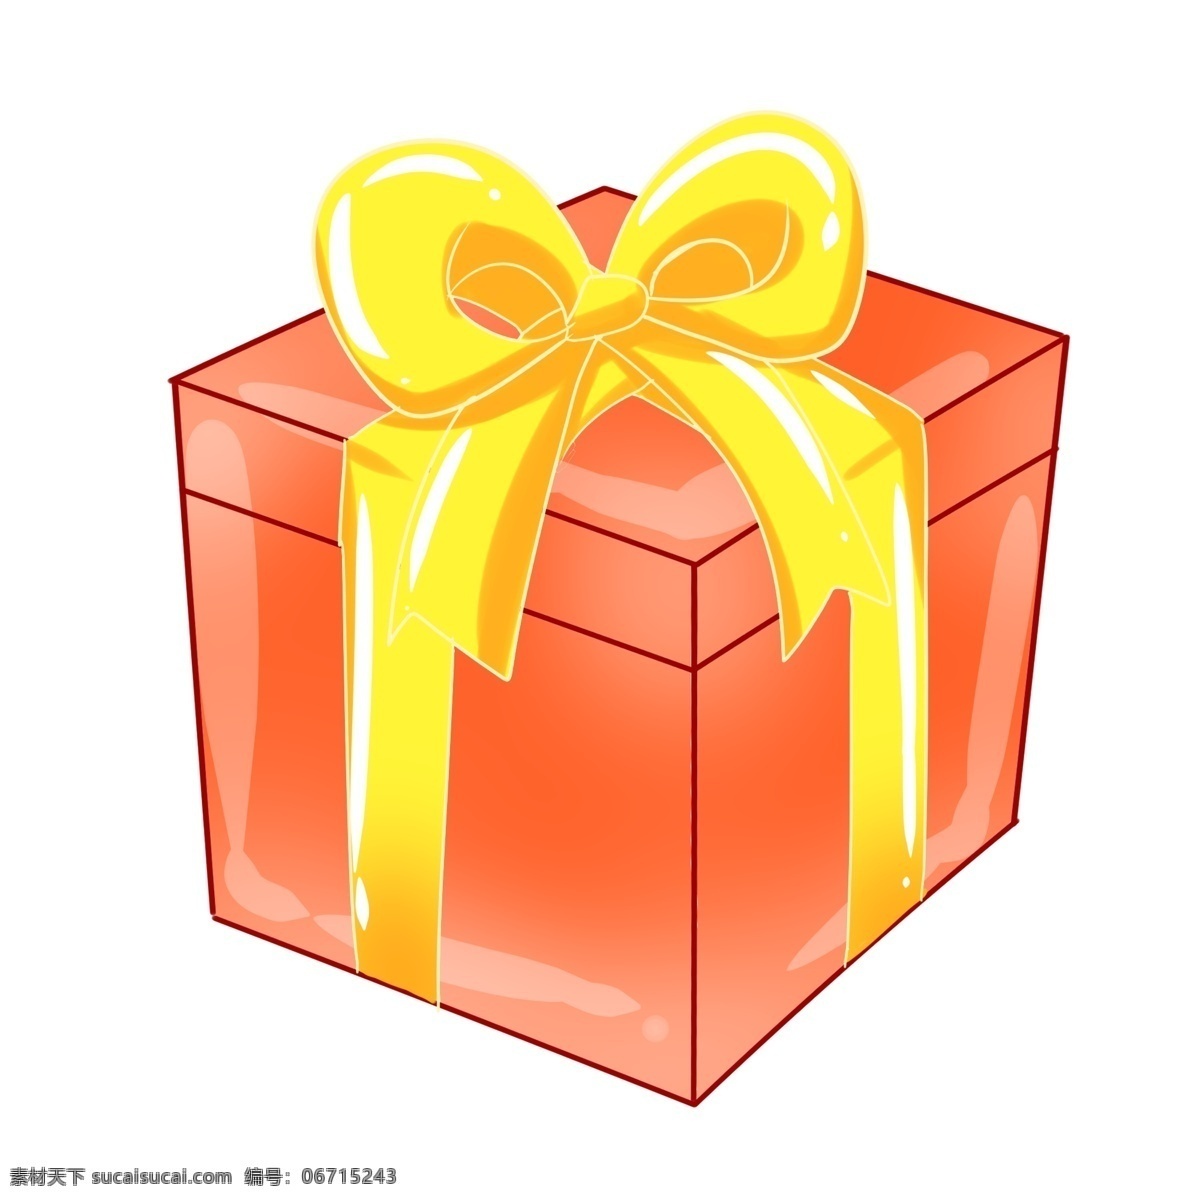 红色 精美 方形 礼盒 礼品礼盒 系了彩带 精美的结 暖色 送人礼物 包装 装饰 方形礼盒 大蝴蝶结